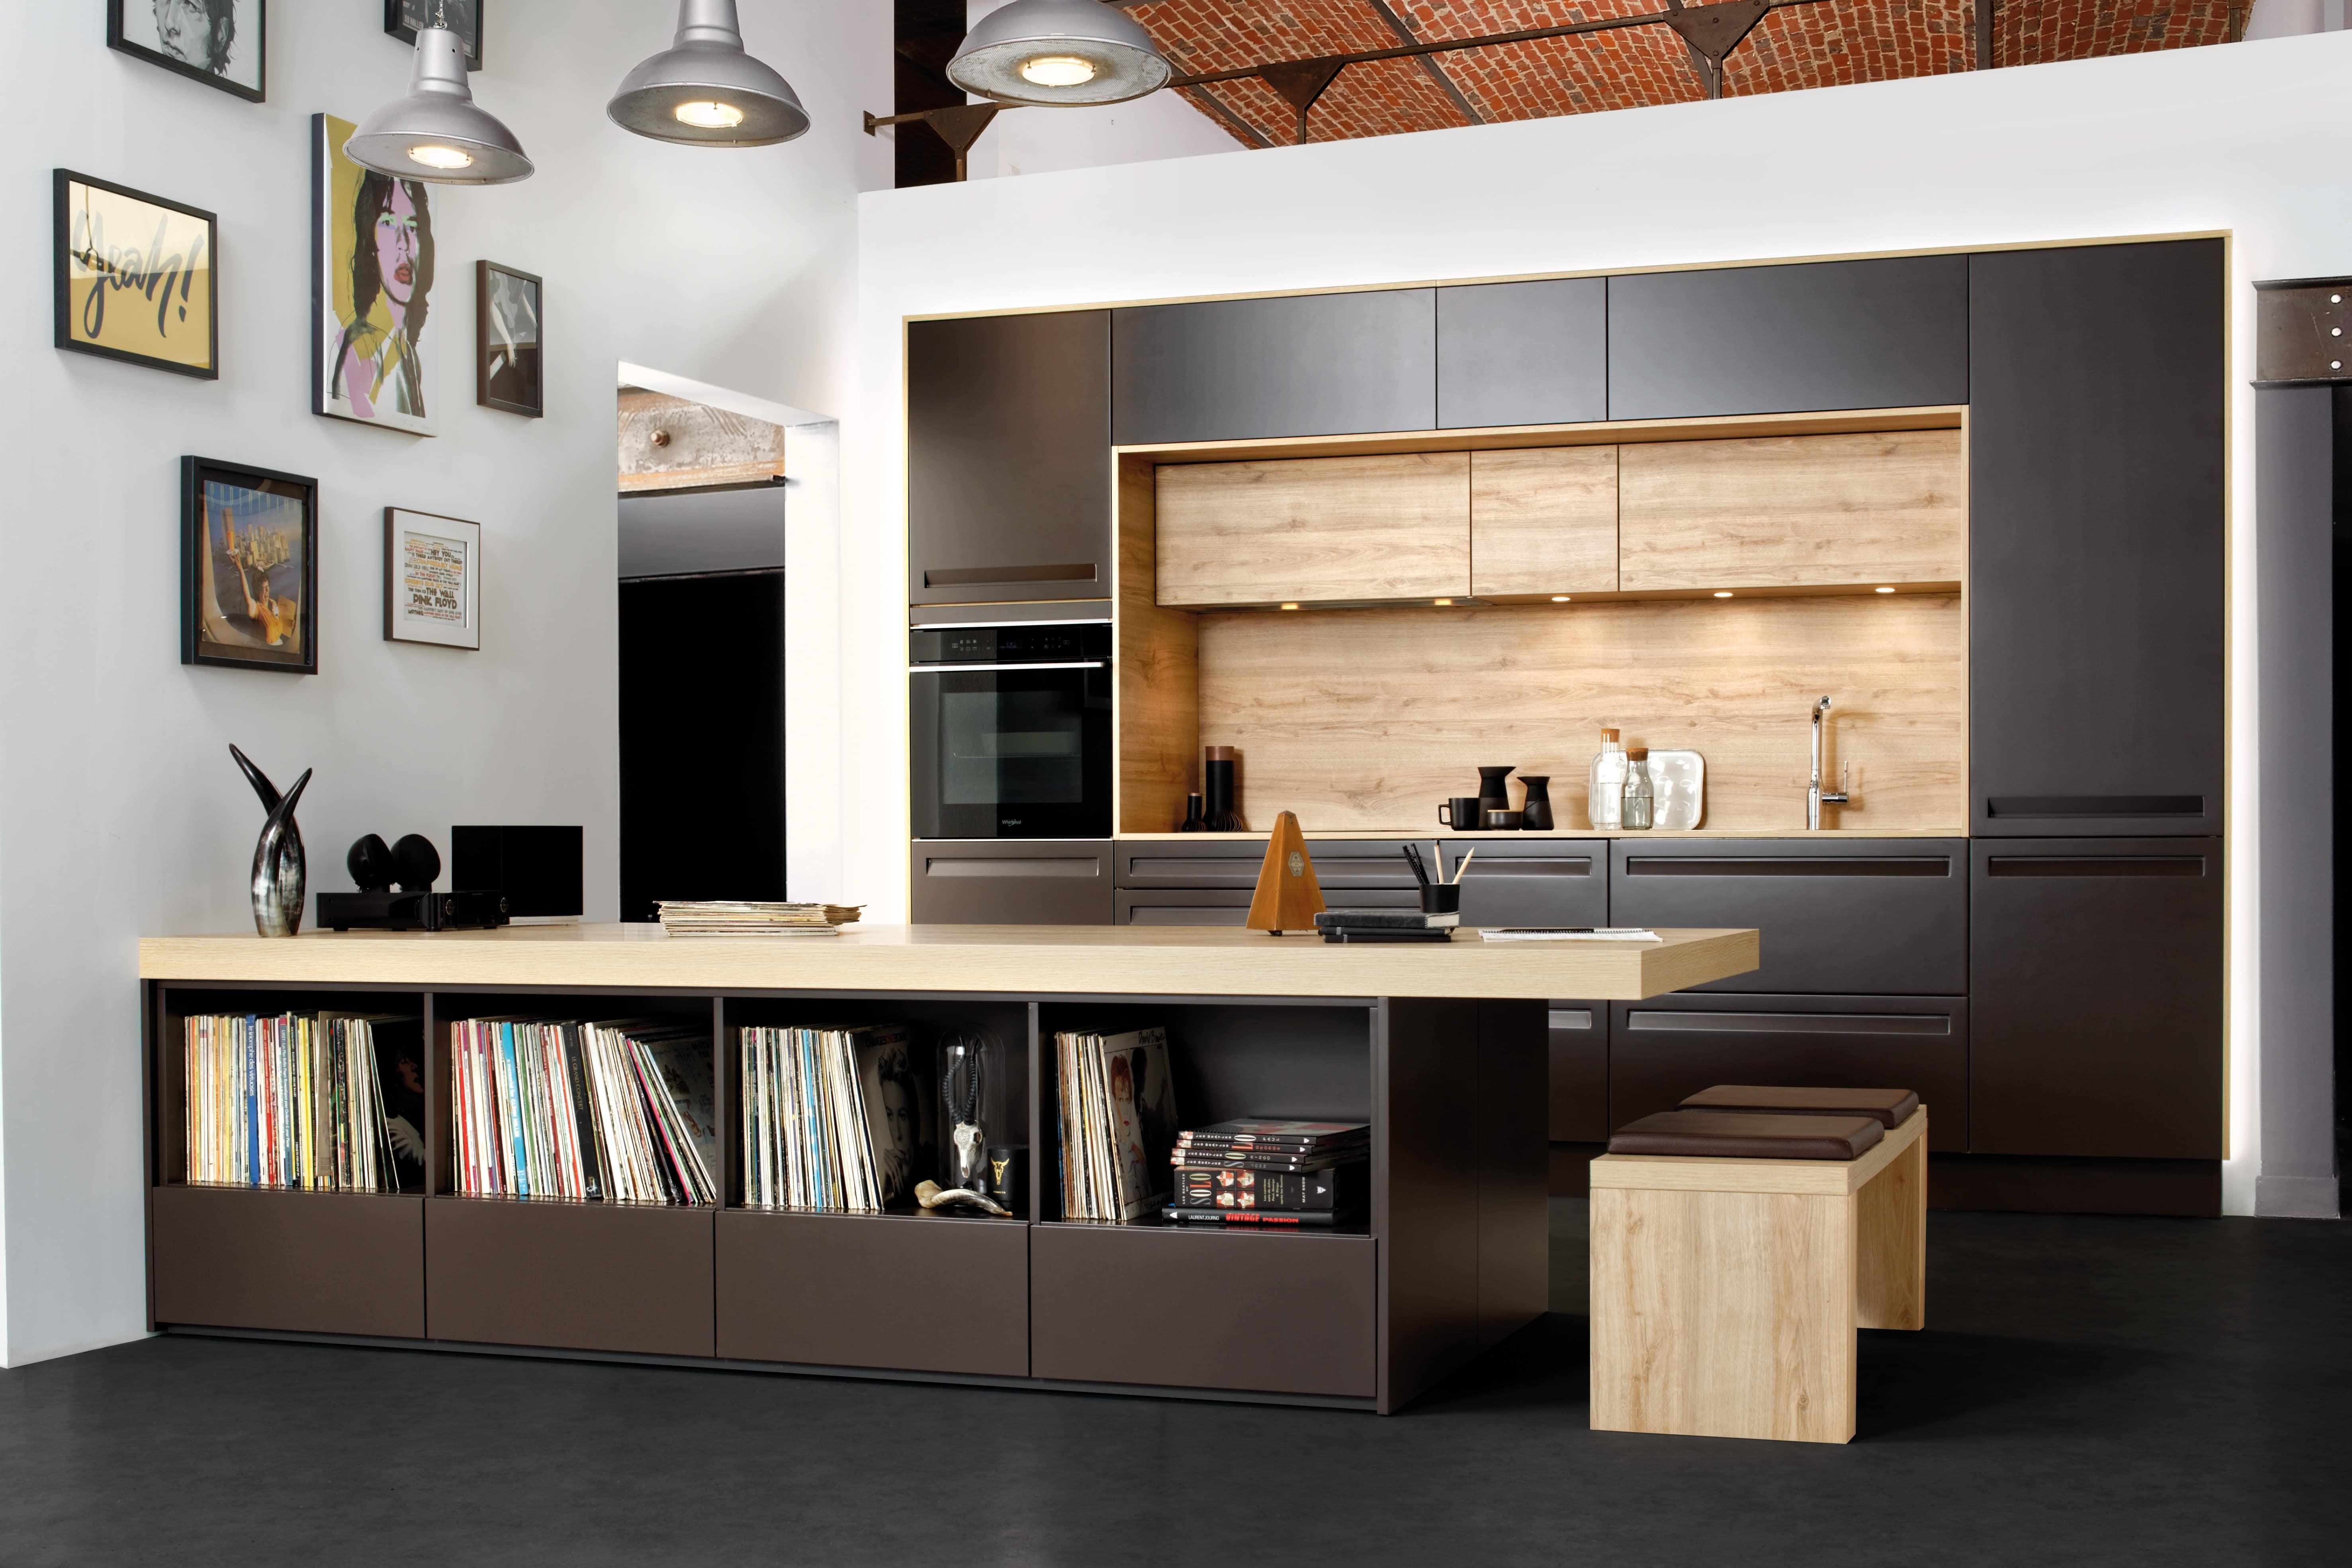 Küche, Esszimmer, Wohnraum – SCHMIDT führt ein Ensemble zu einem perfekten Ganzen zusammen. #küche #Wohnraum